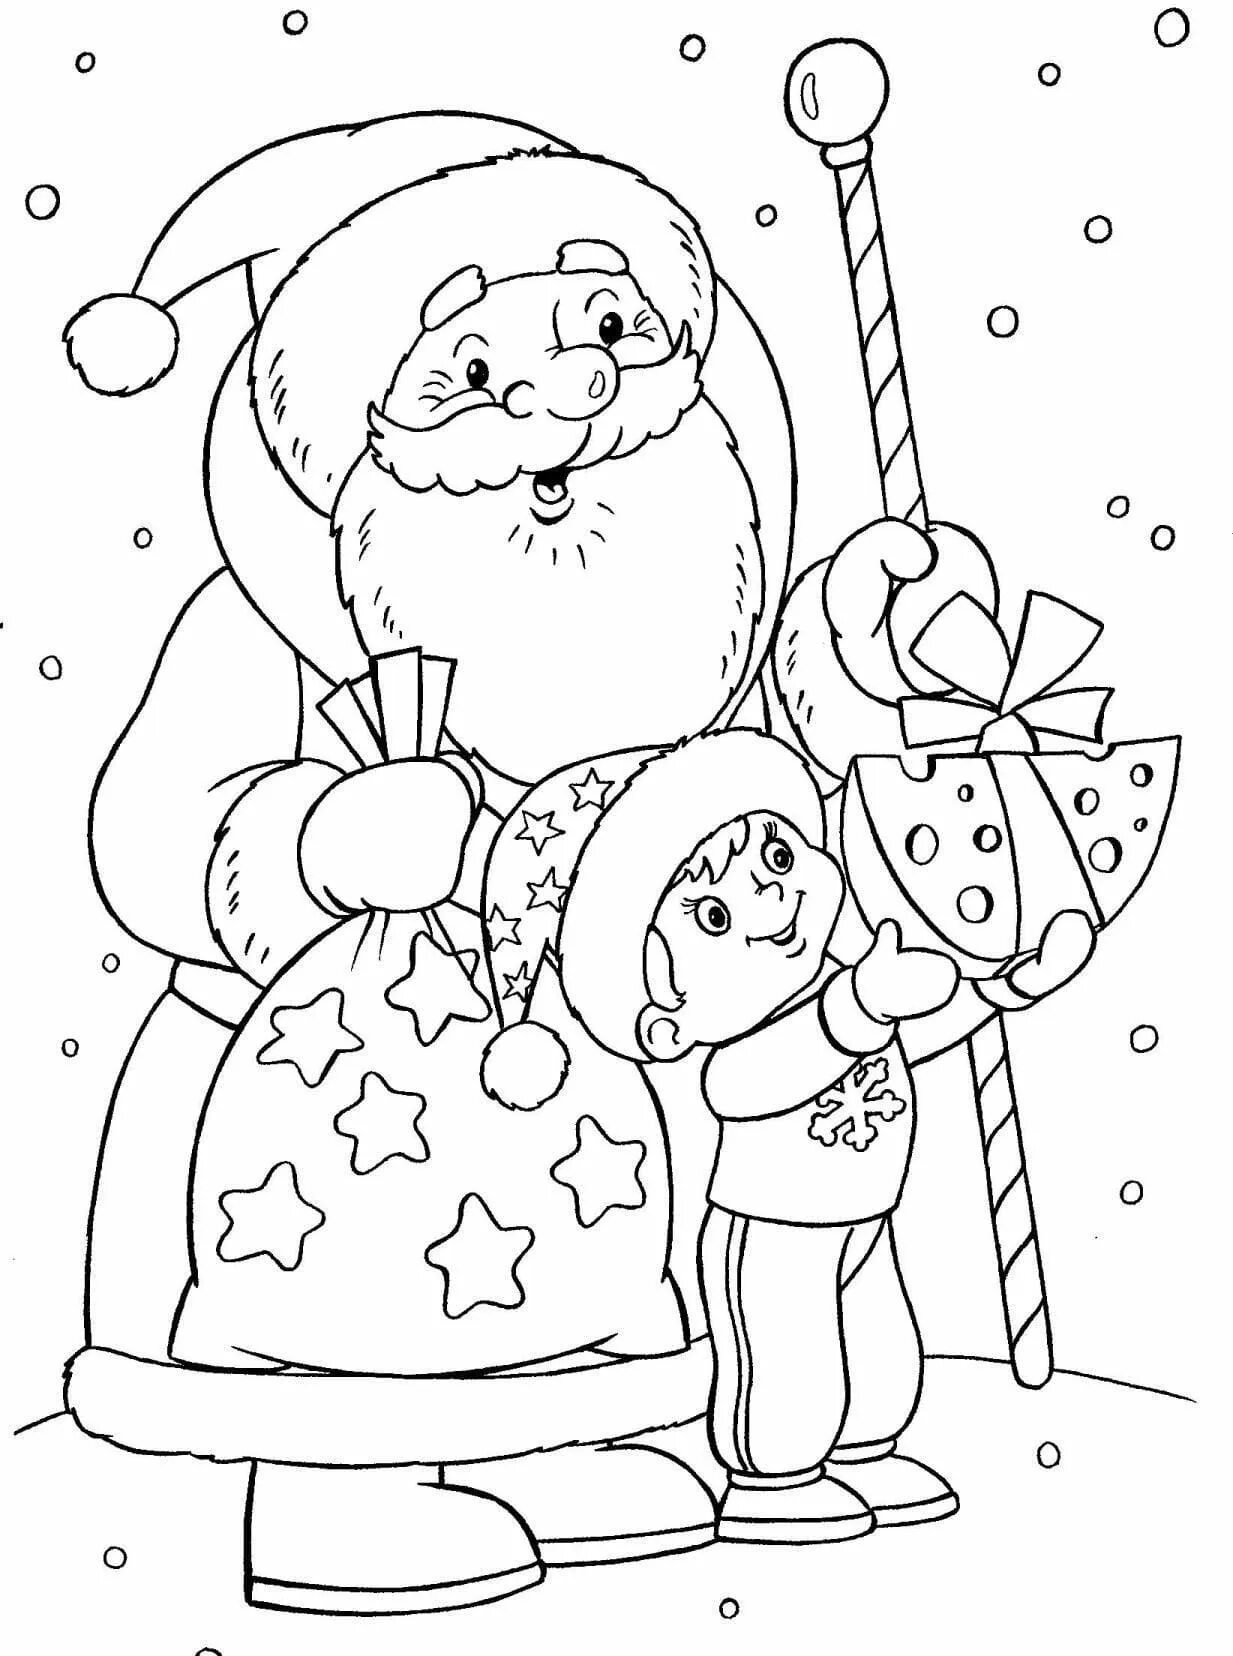 Дед Мороз раскраска. Раскраска Новогодняя для детей. Новогодние раскраски дляетей. Дед Мороз и Снегурочка раскраска.